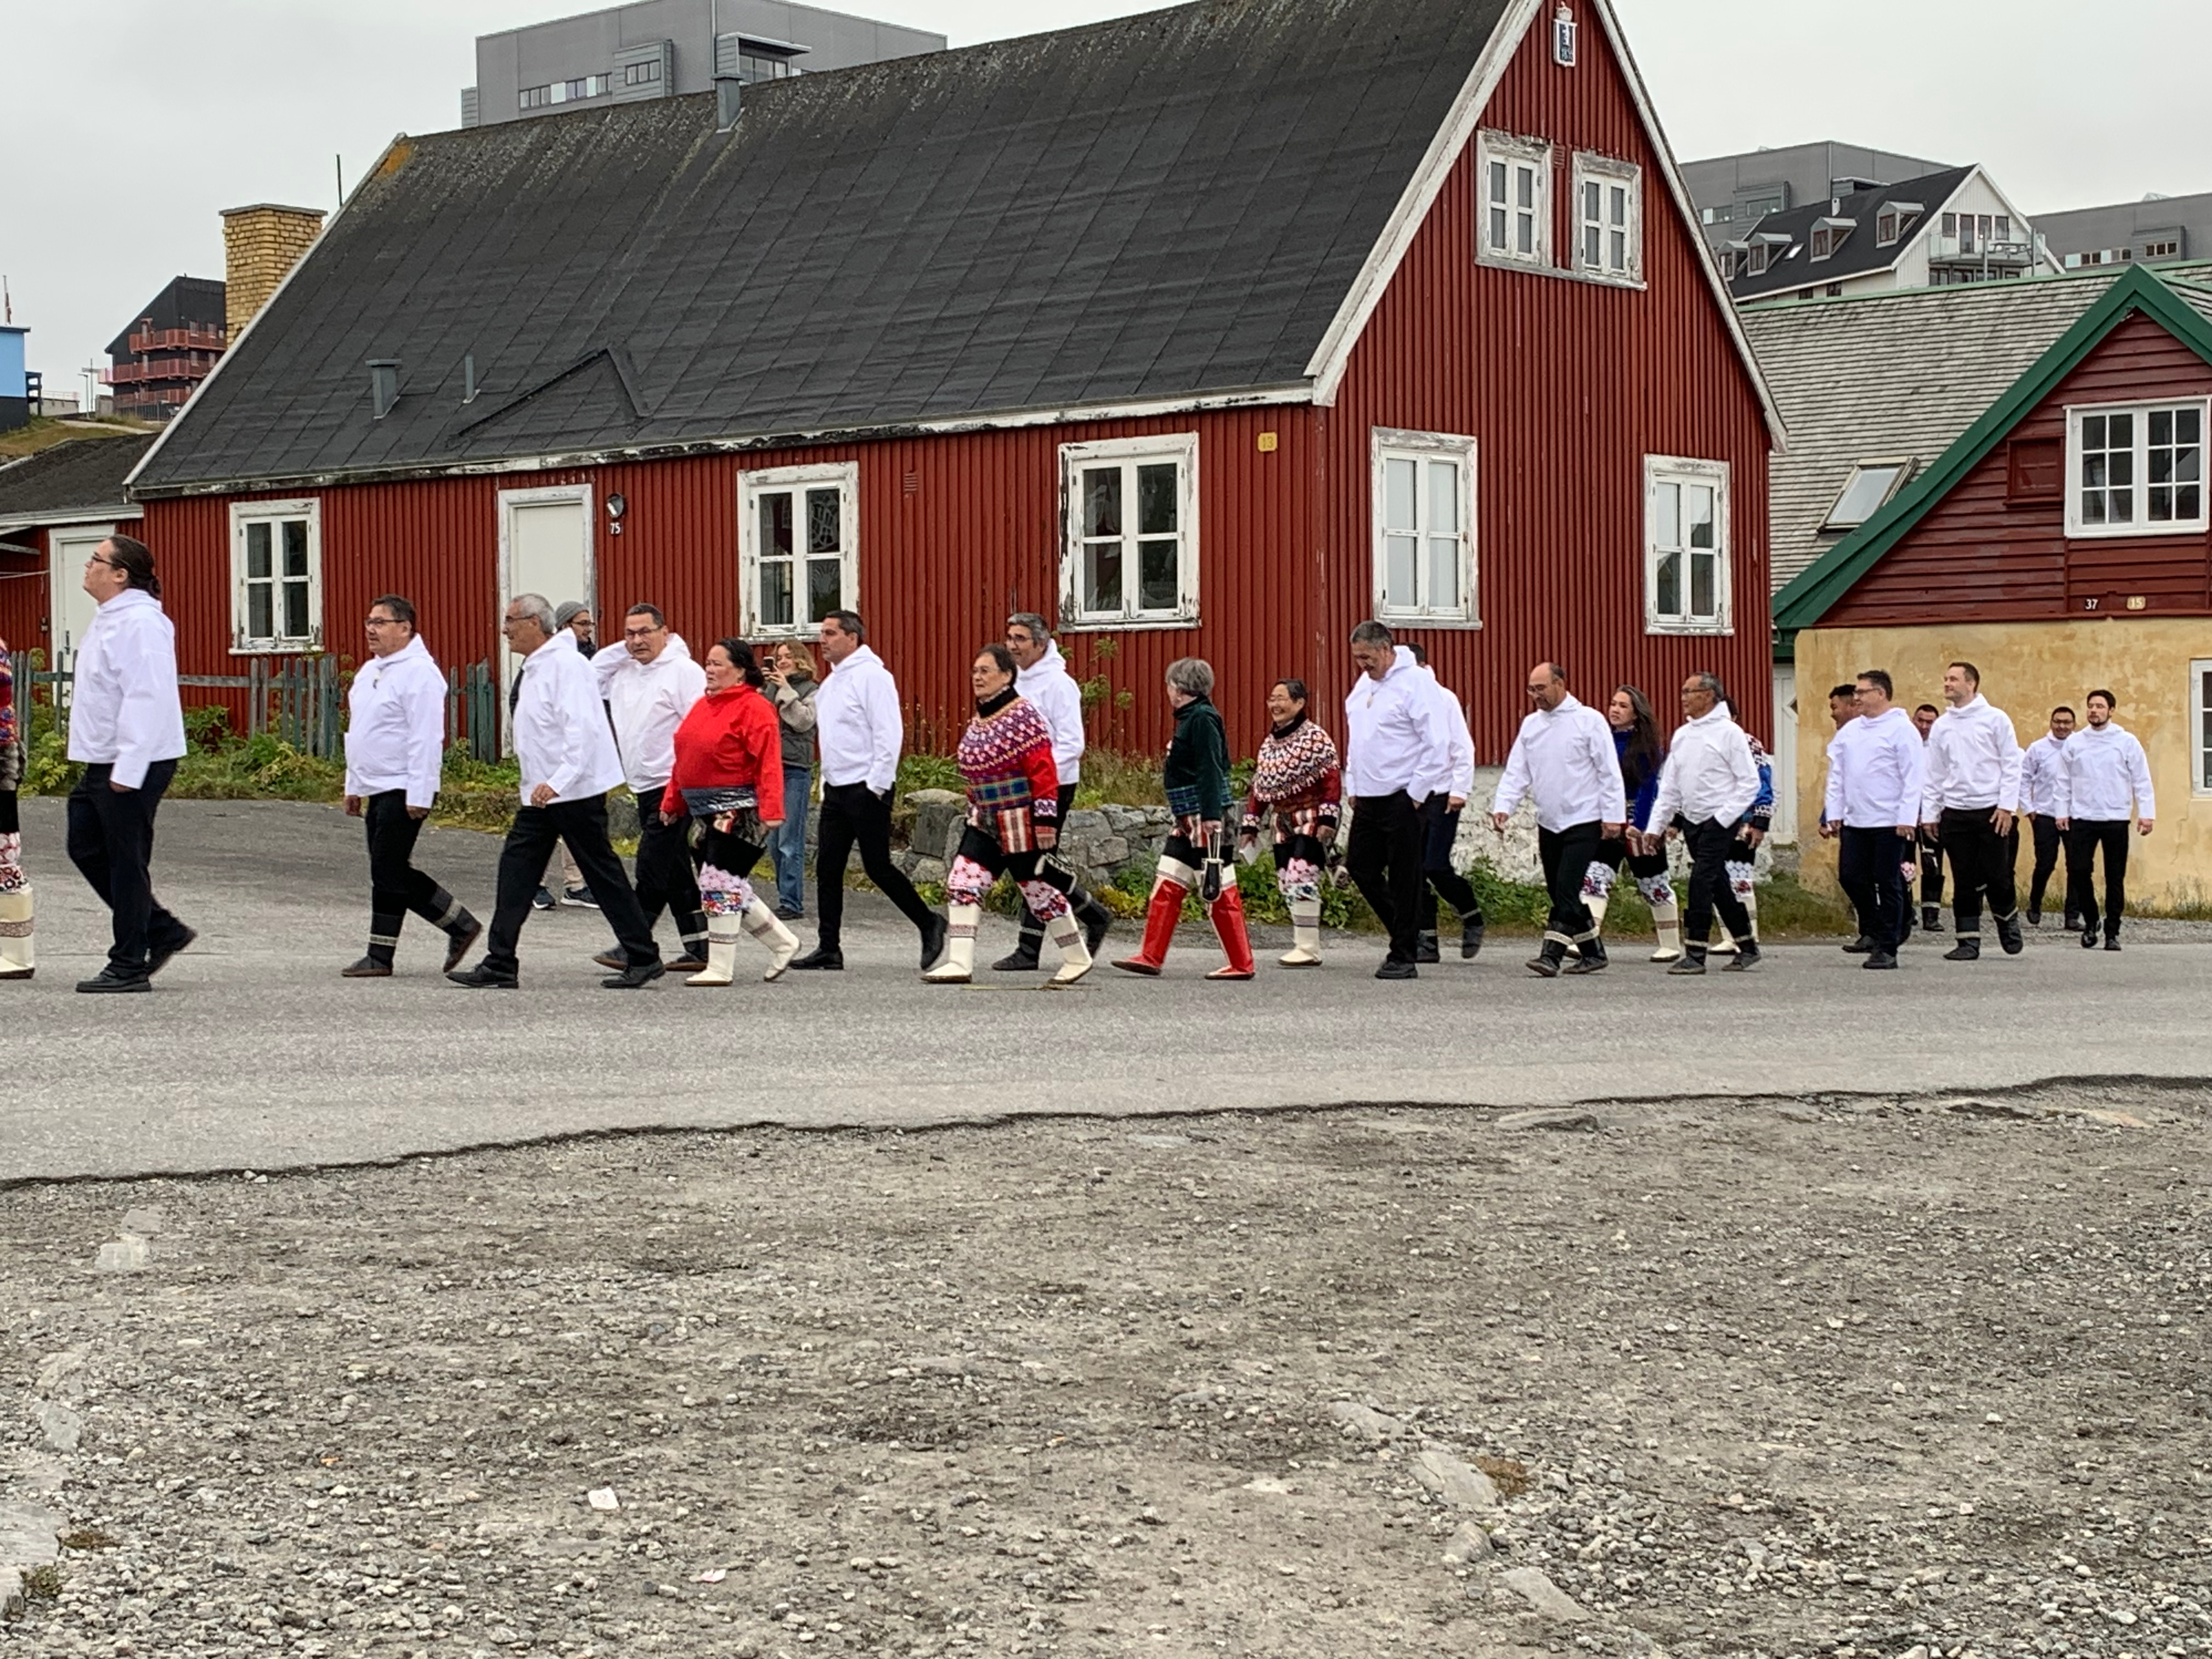 Den 22. september åbnede efterårssamlingen i Inatsisartut, Grønlands parlament. Åbningsceremonien bestod af optog fra Hans Egedes hus til domkirken, hvor der blev holdt gudstjeneste inden optoget fortsatte til Inatsisartutsalen.